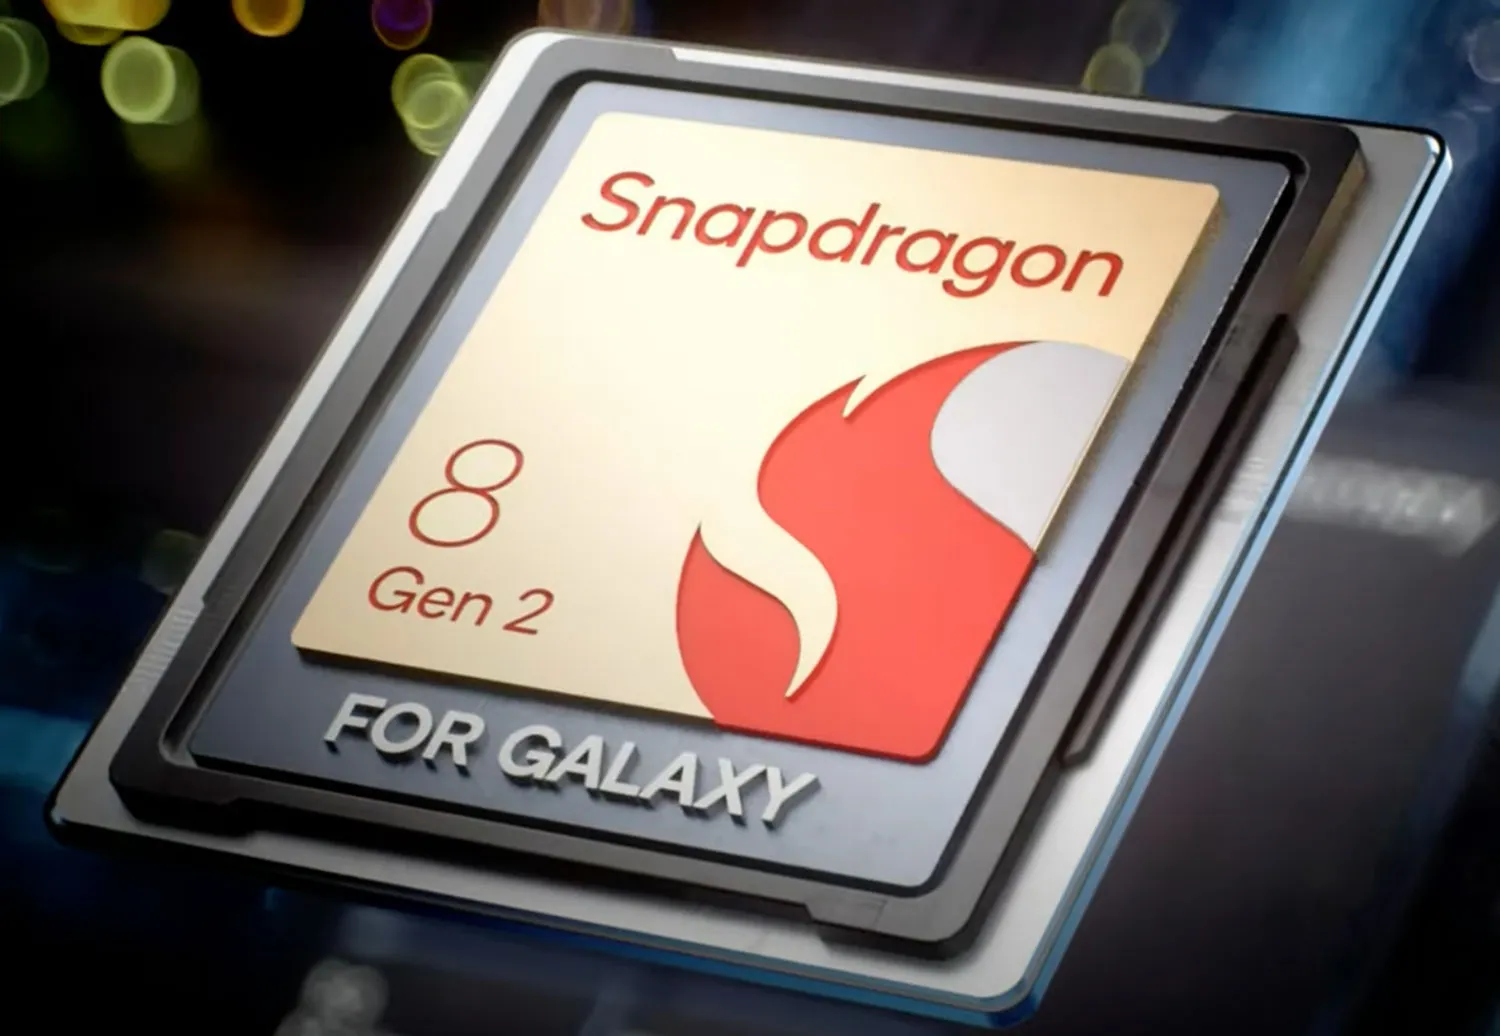 Snapdragon 8 Gen 2 for Galaxy